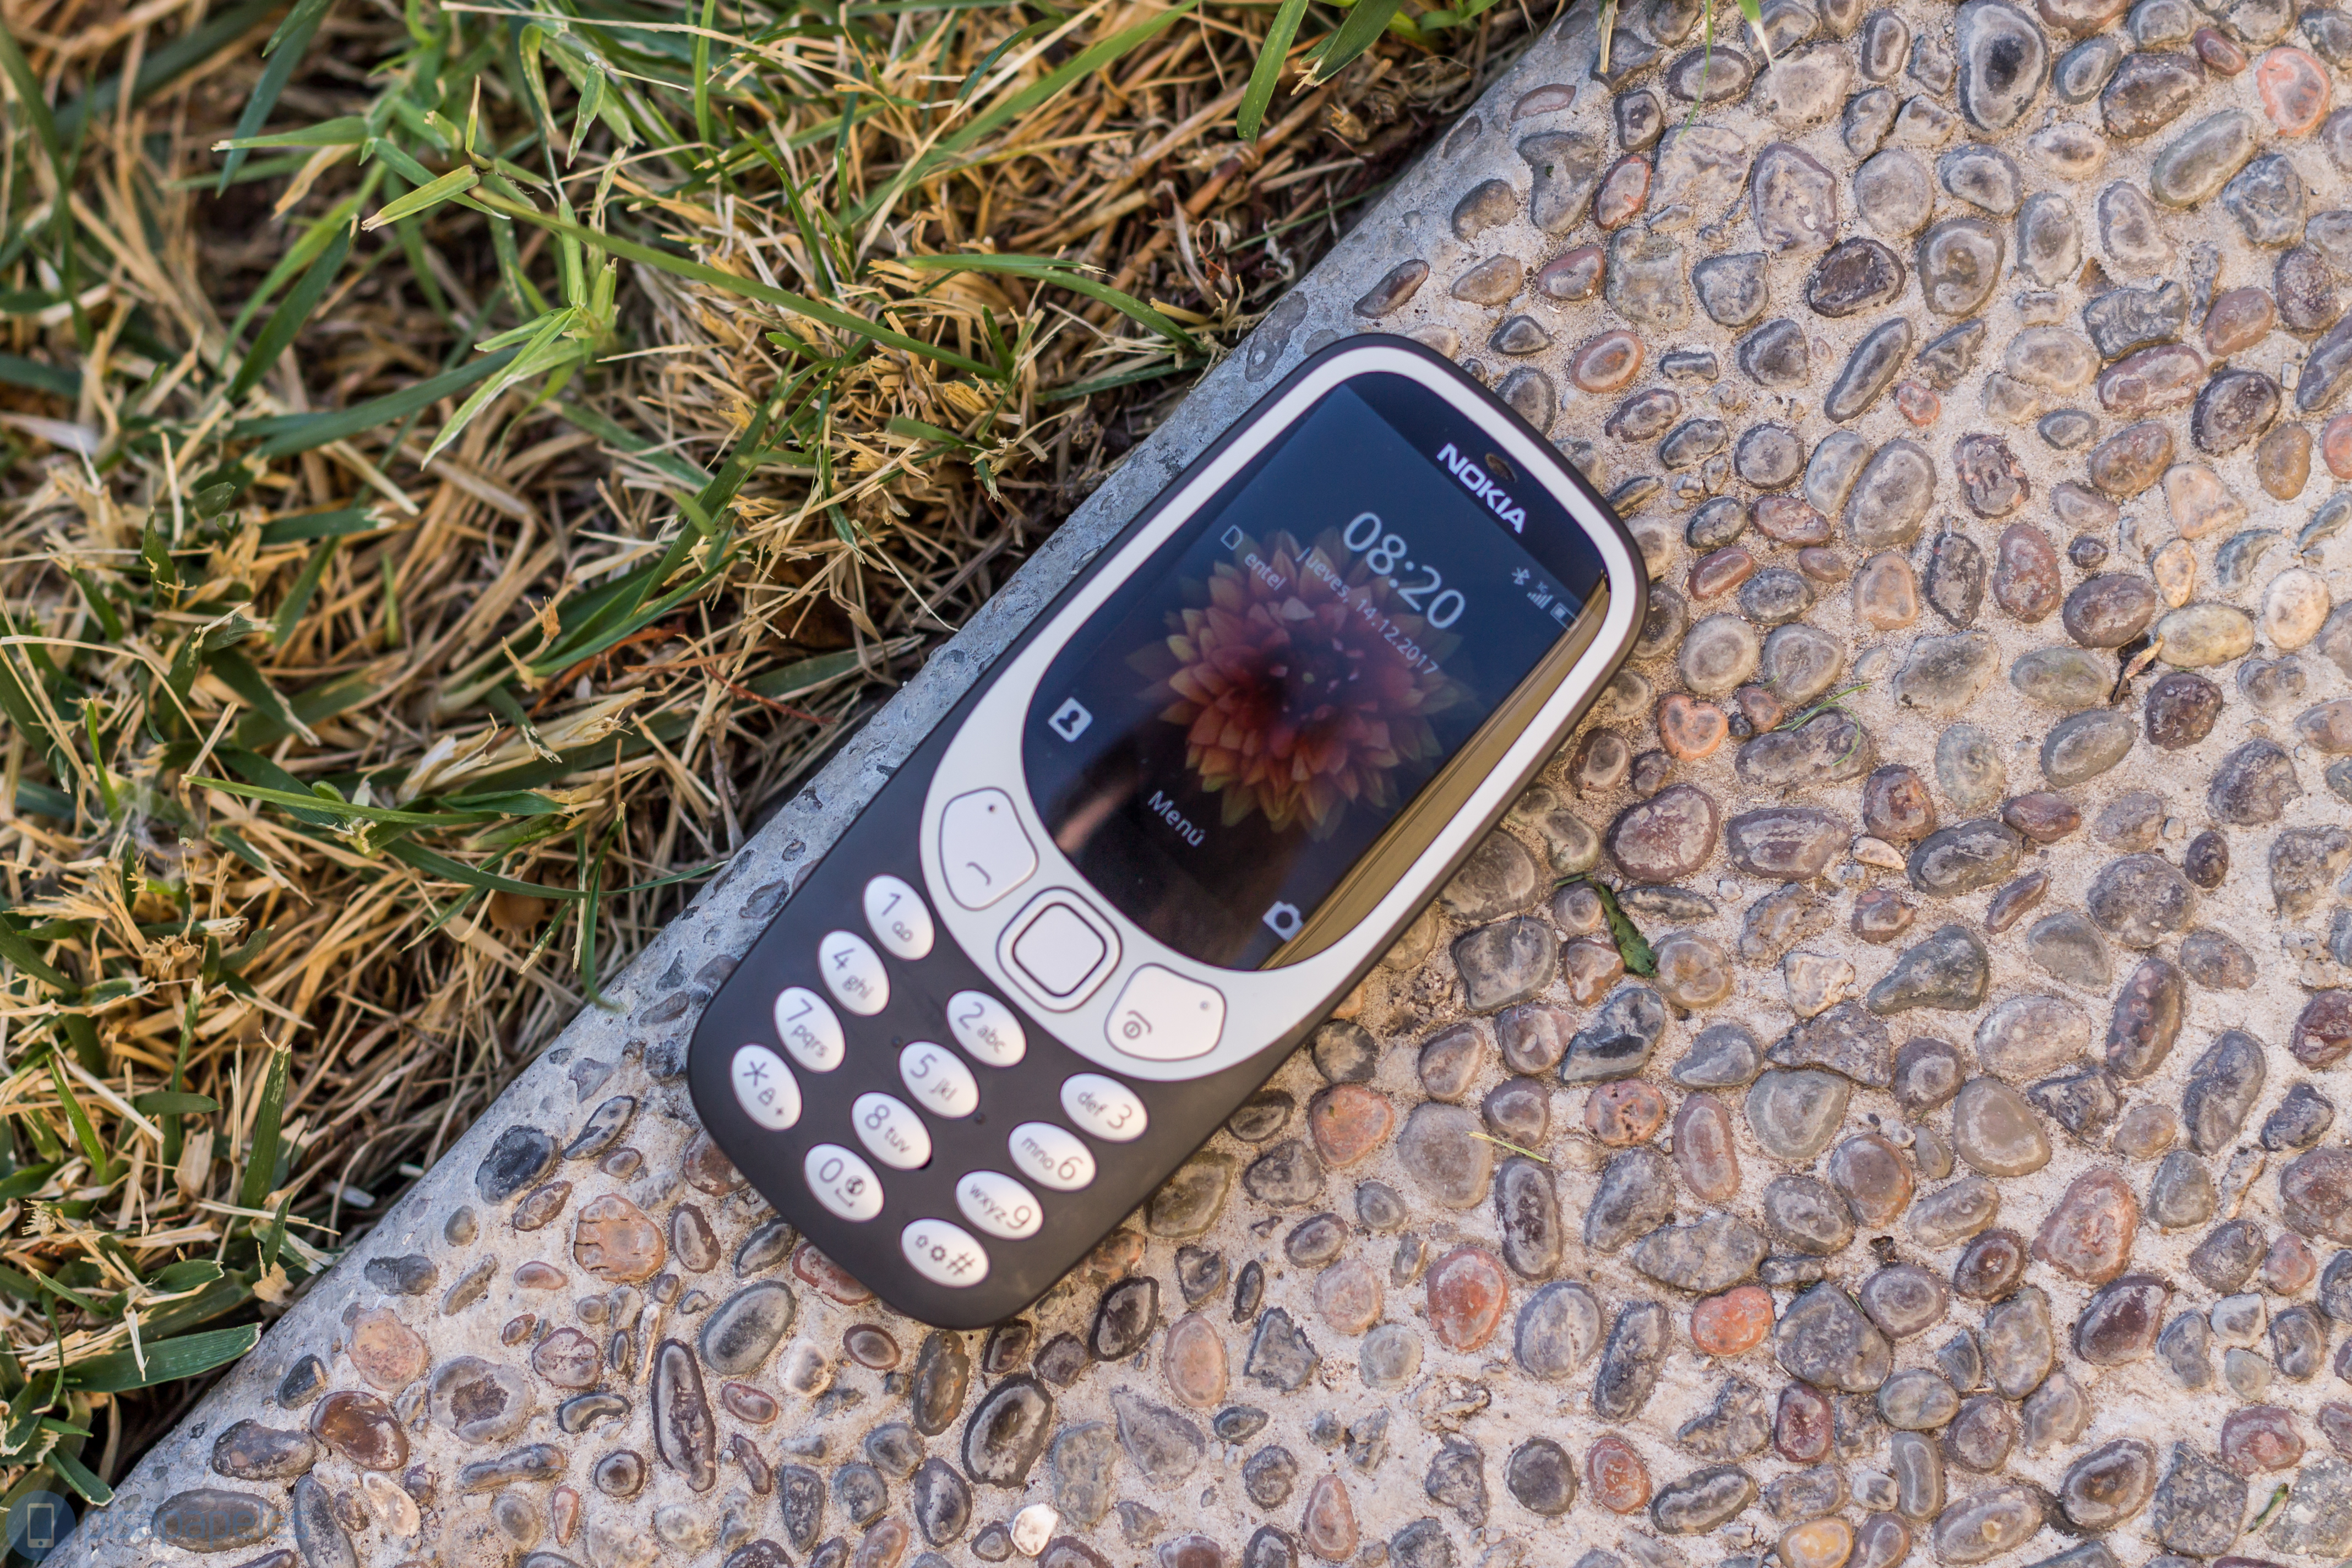 Nokia 3310 2'ye göz atın"genişlik =" 4272 "yükseklik =" 2848